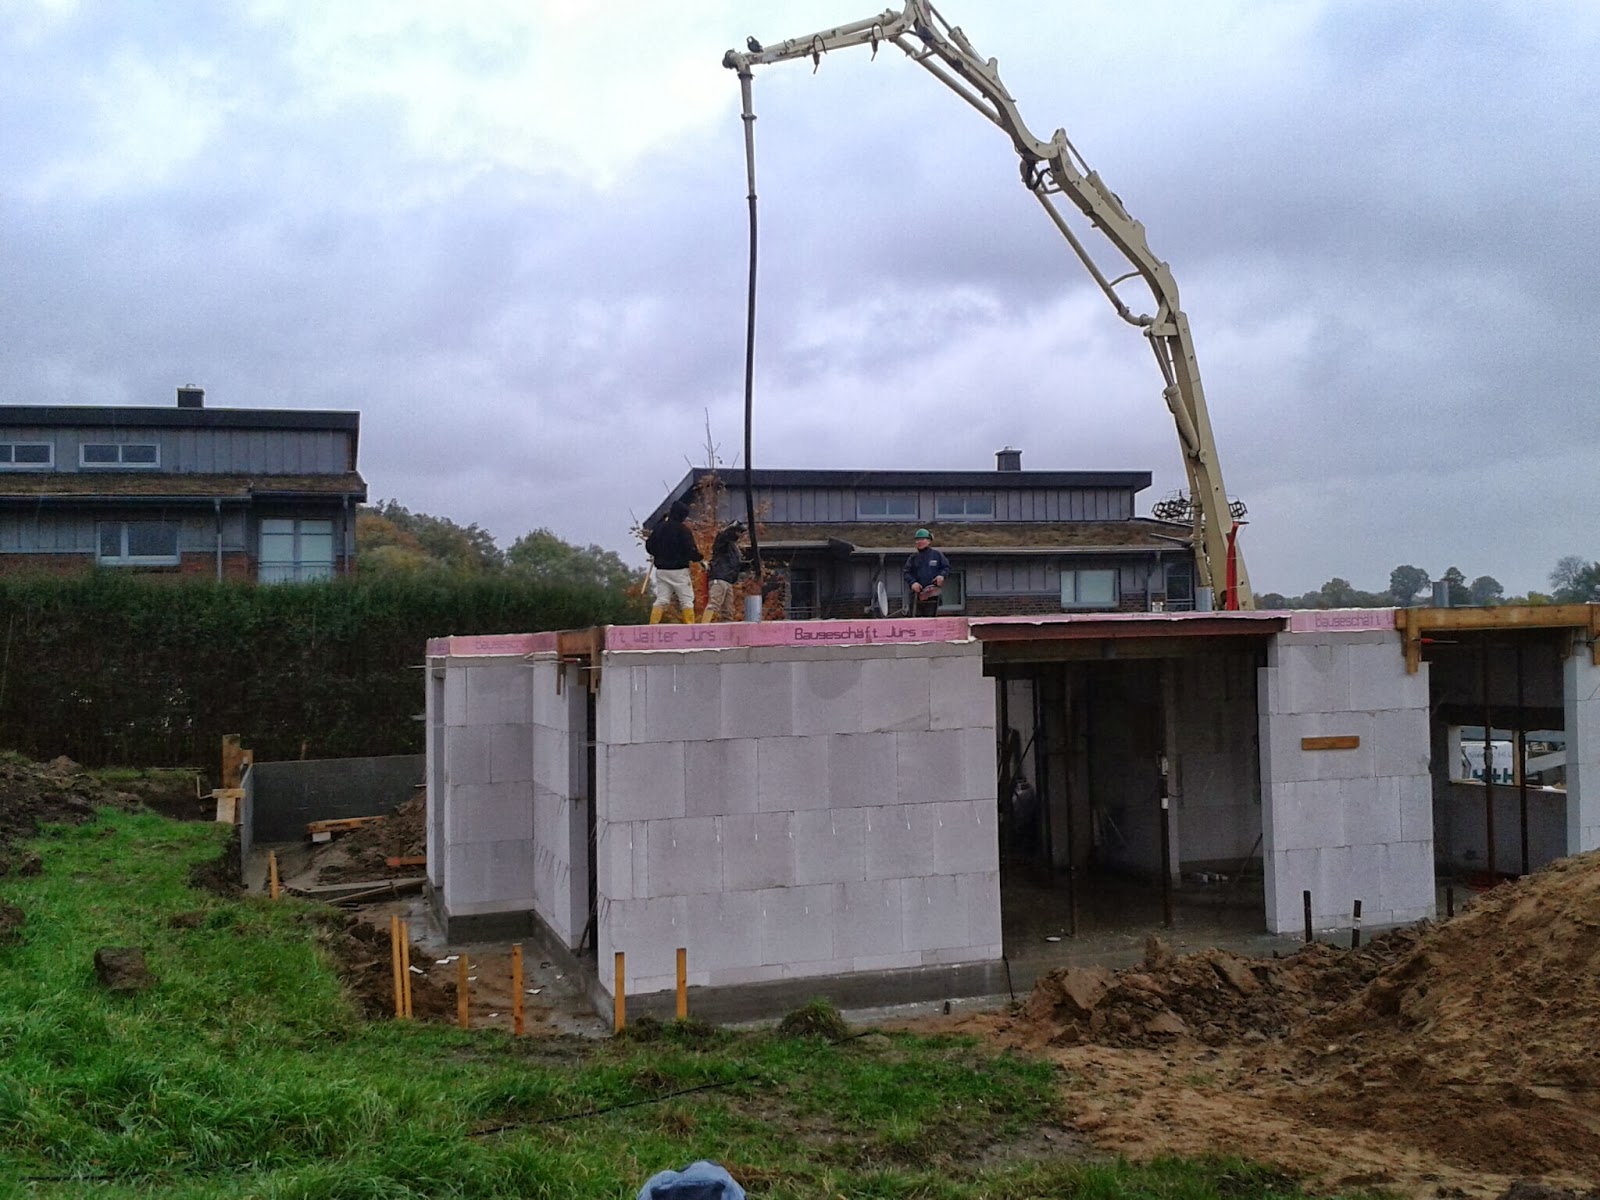 Unser Abenteuer - Hausbau 2013/2014: Beton für die Decke